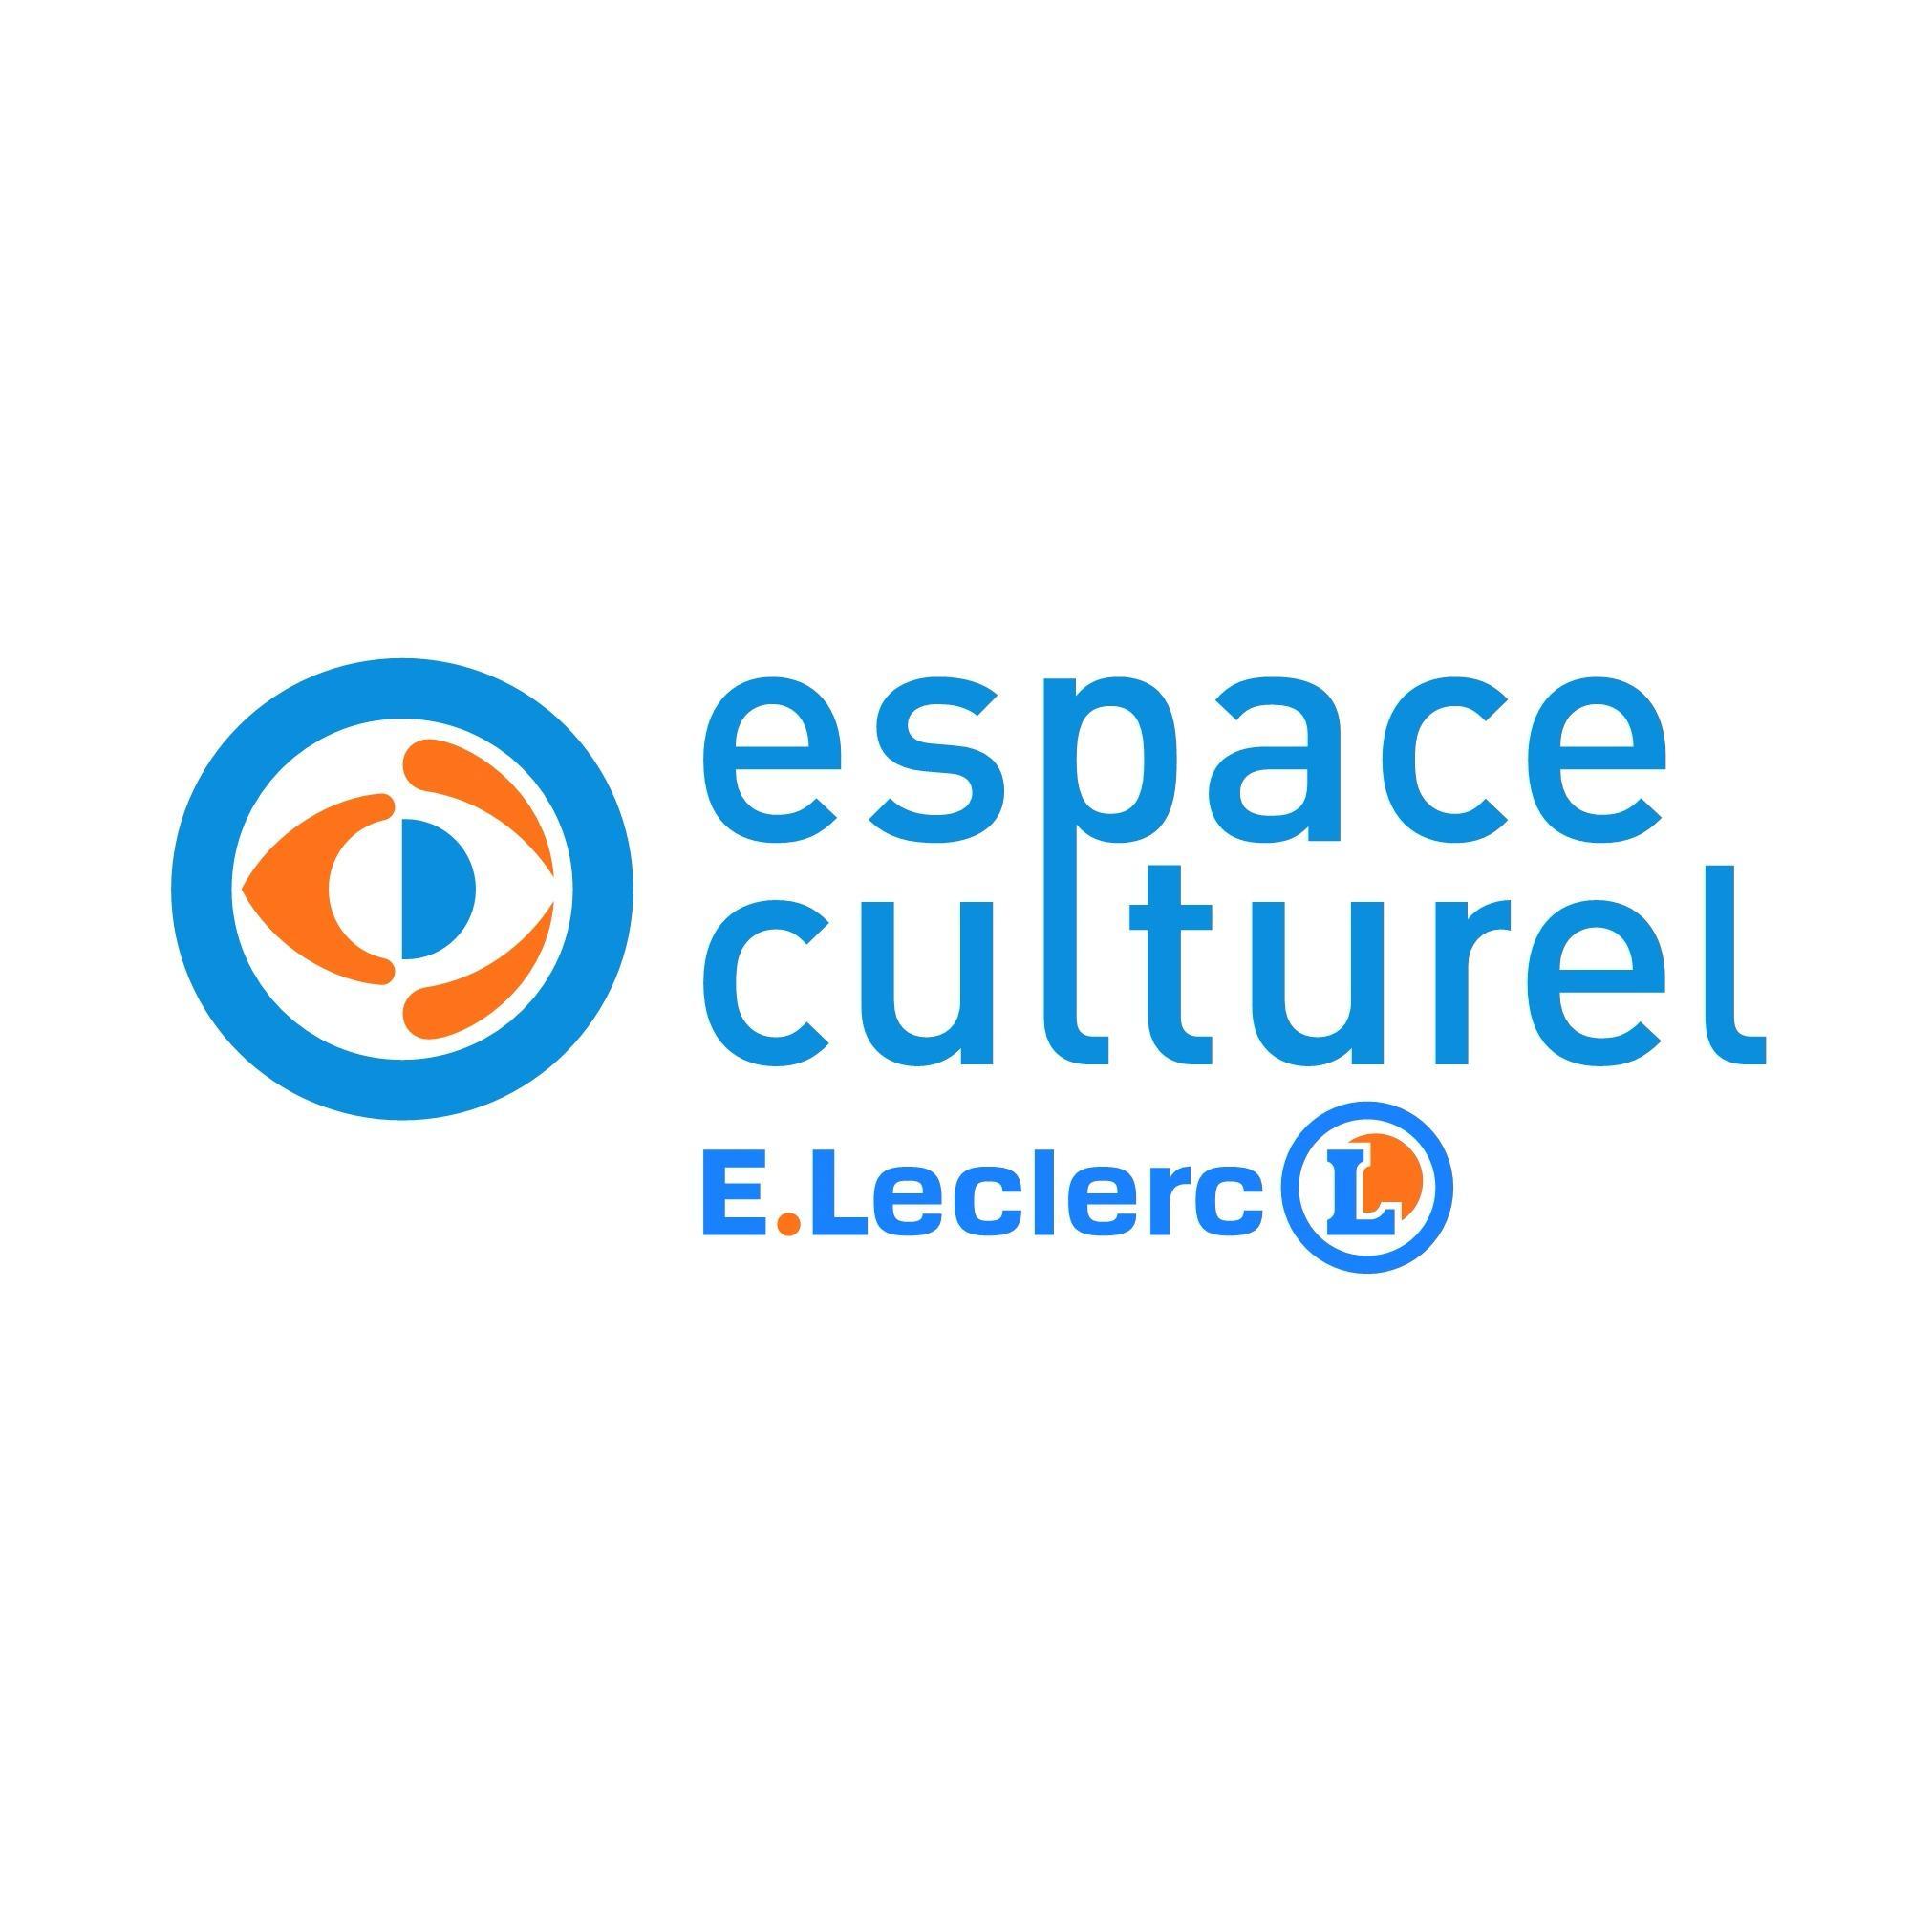 E.leclerc Espace Culturel Bergerac